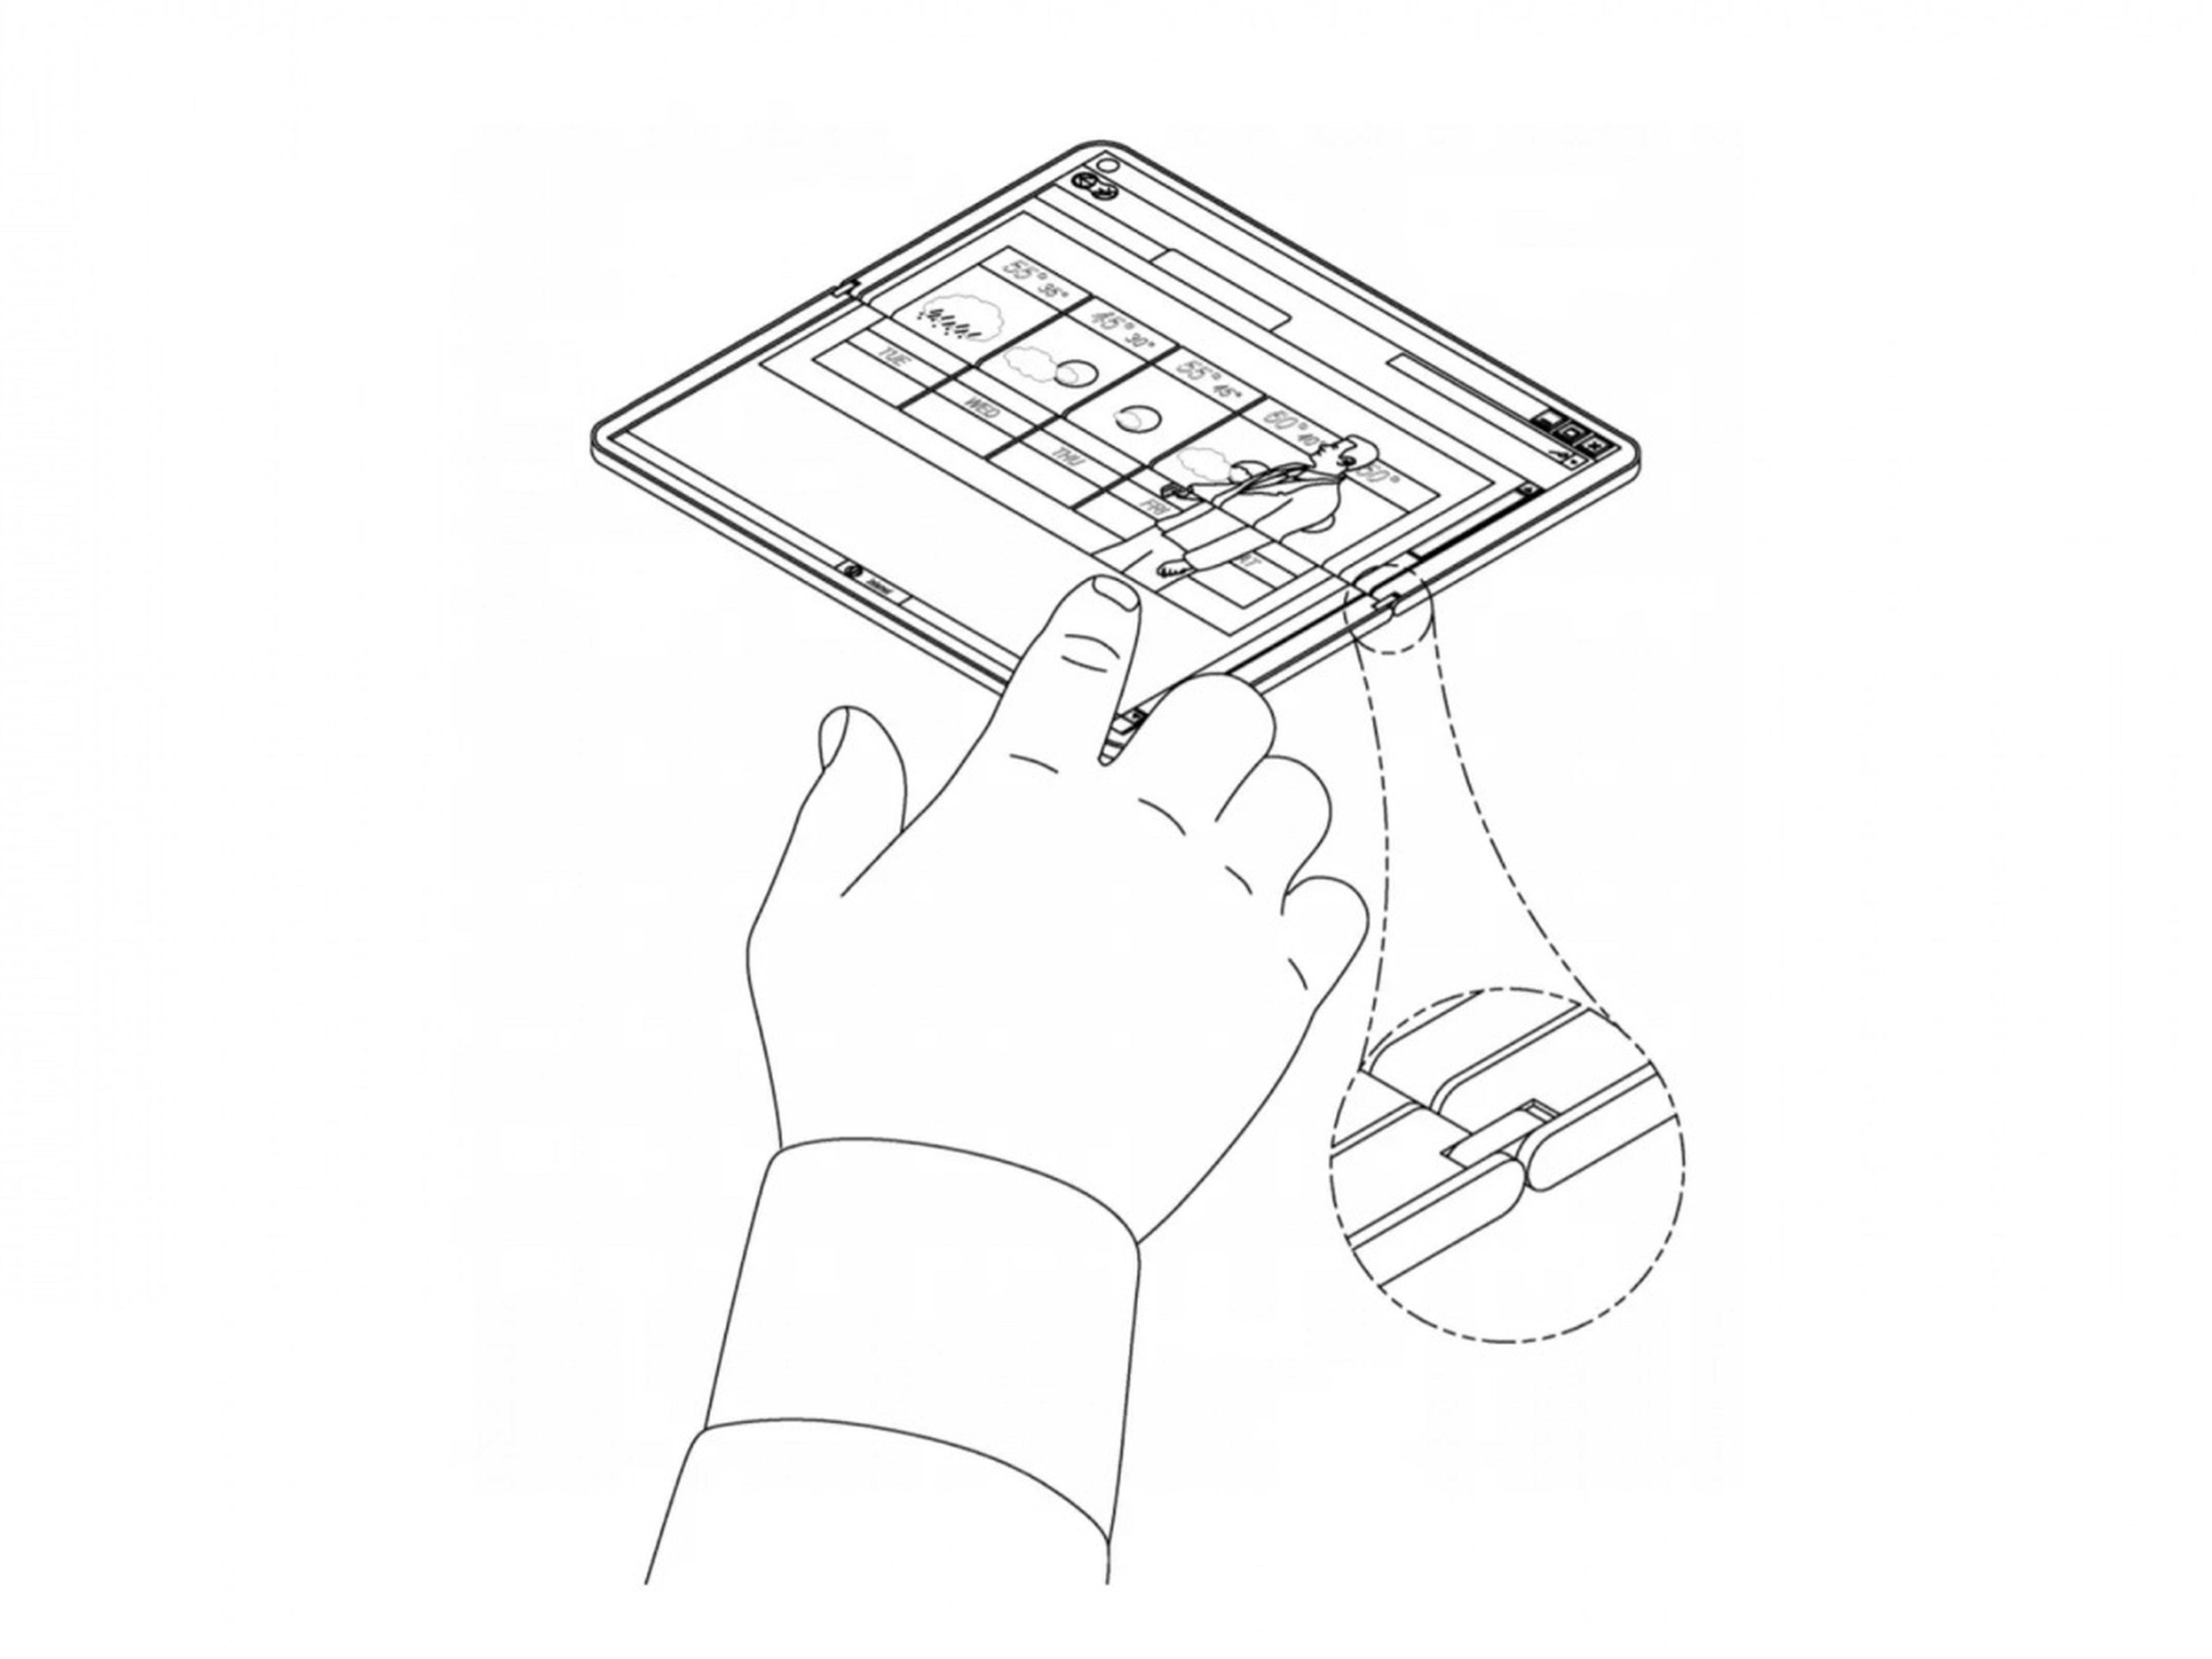 Una patente para una tablet plegable de Microsoft.